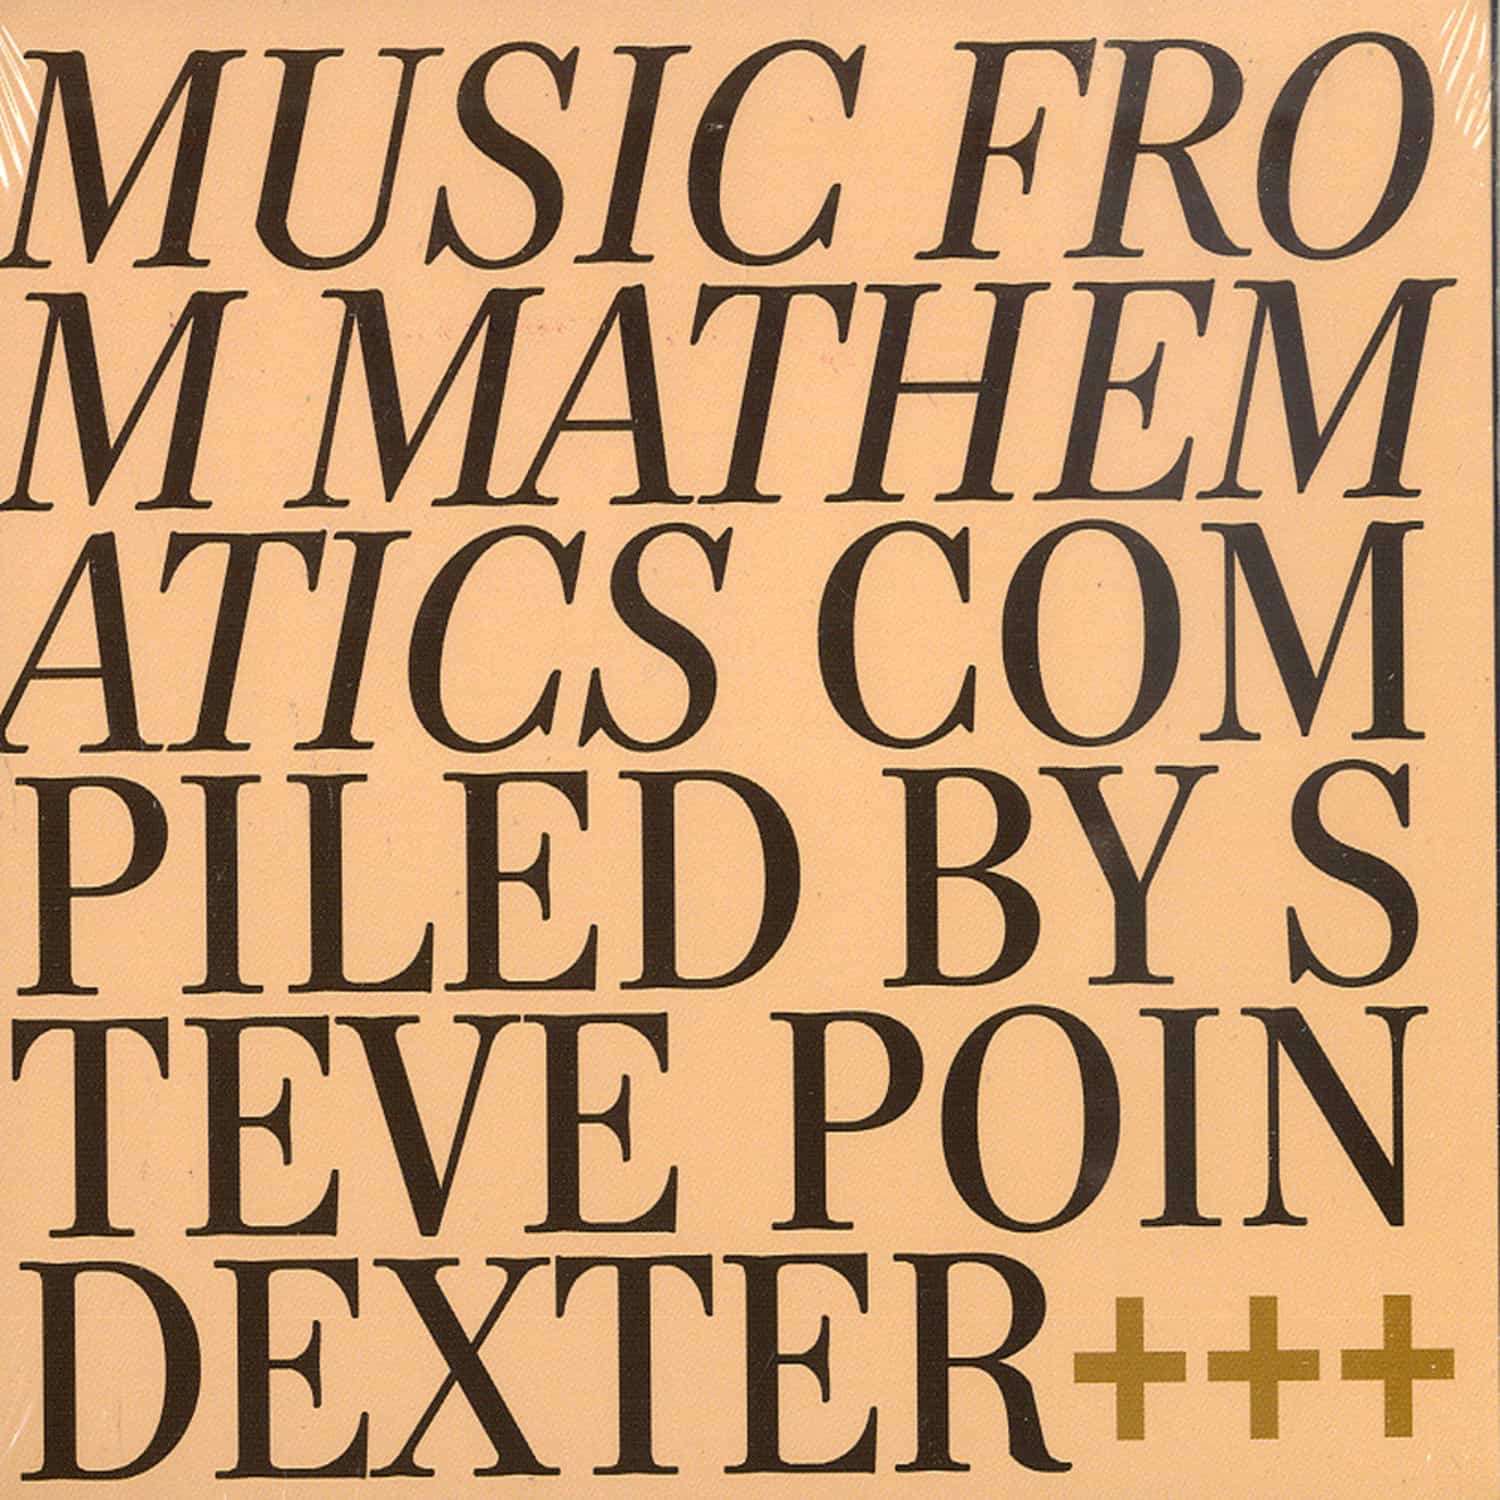 Steve Poindexter - MUSIC FROM MATHEMATICS 